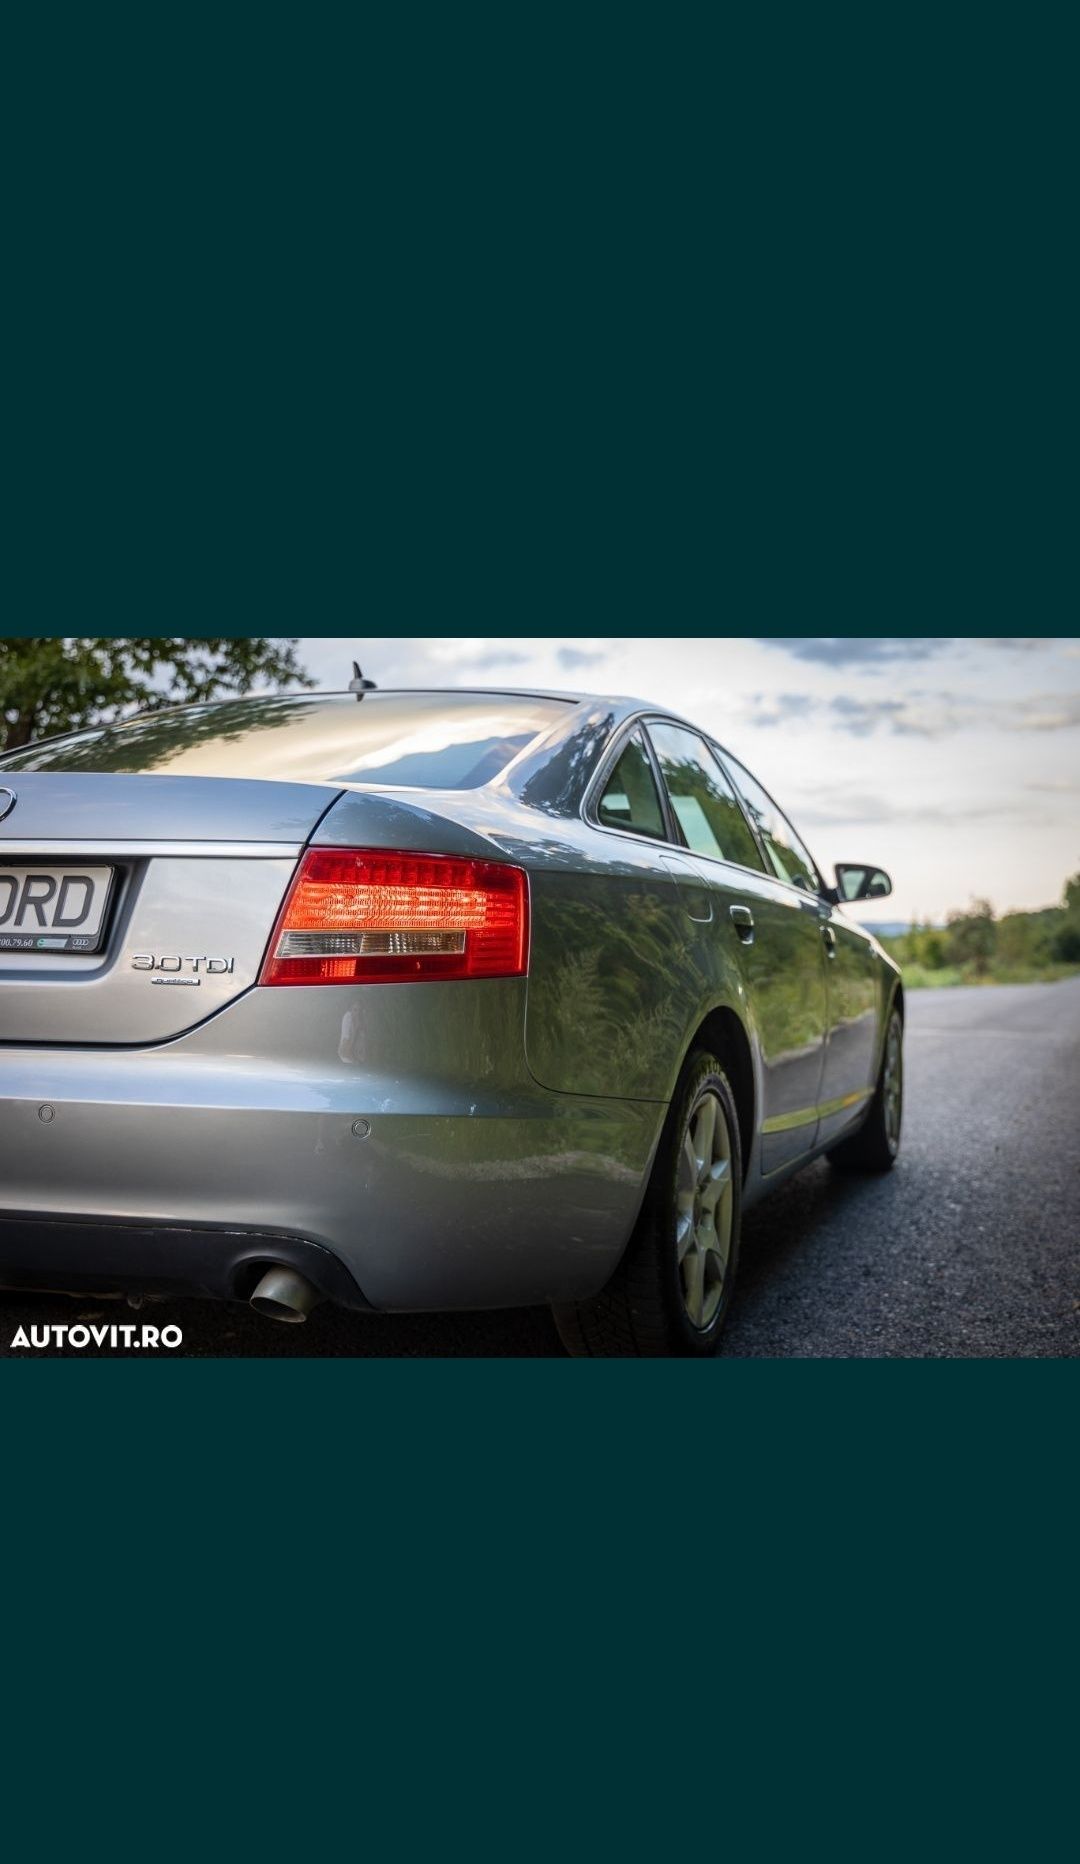 Audi A6 C6 quattro 265 000 km reali